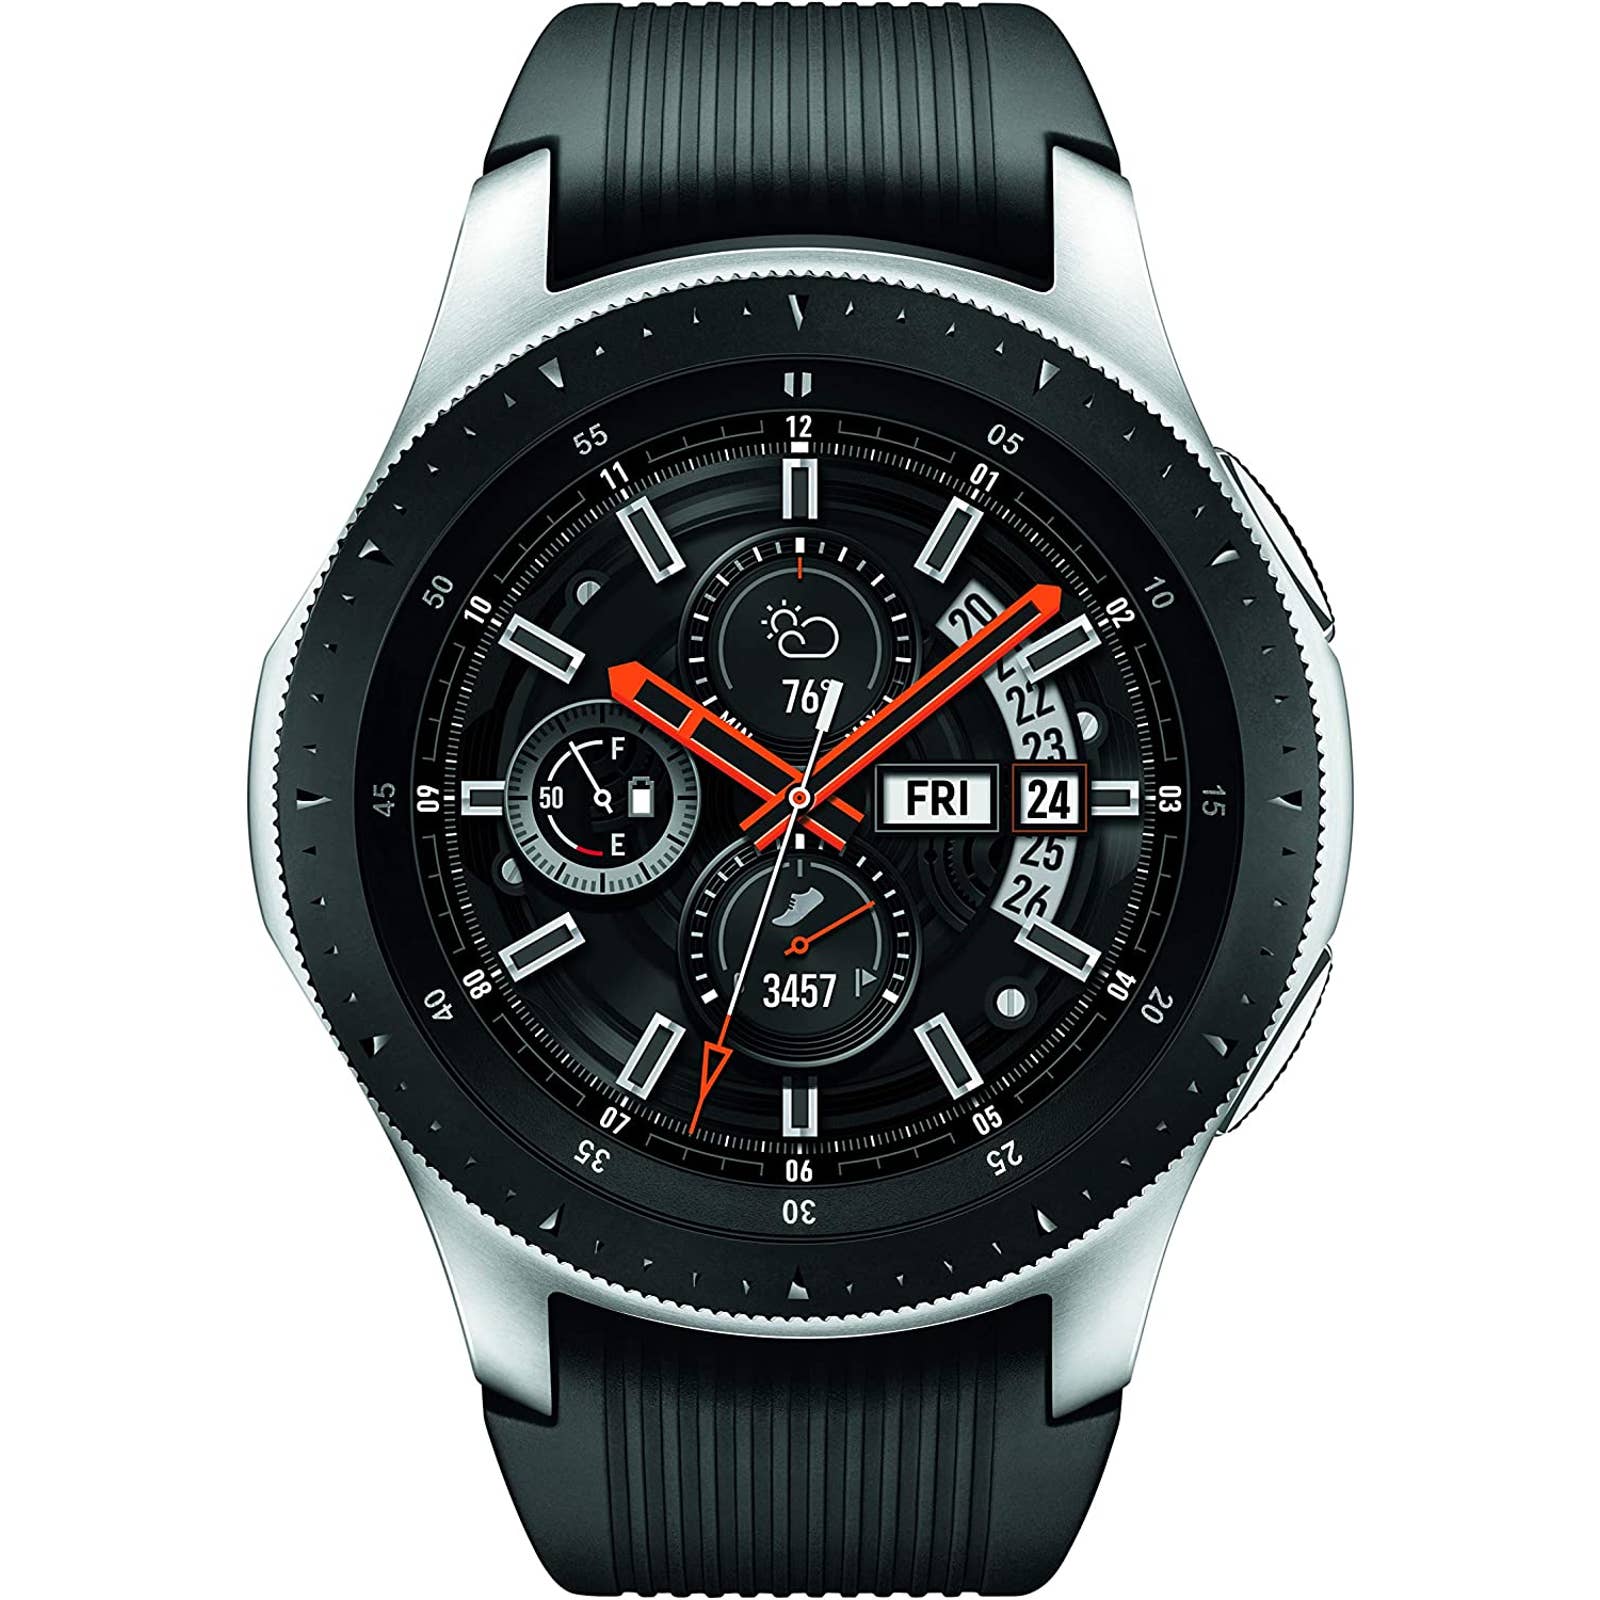 Samsung - SMR800NZSAXAR Galaxy Watch Smartwatch 46mm Stainless Steel - Silver